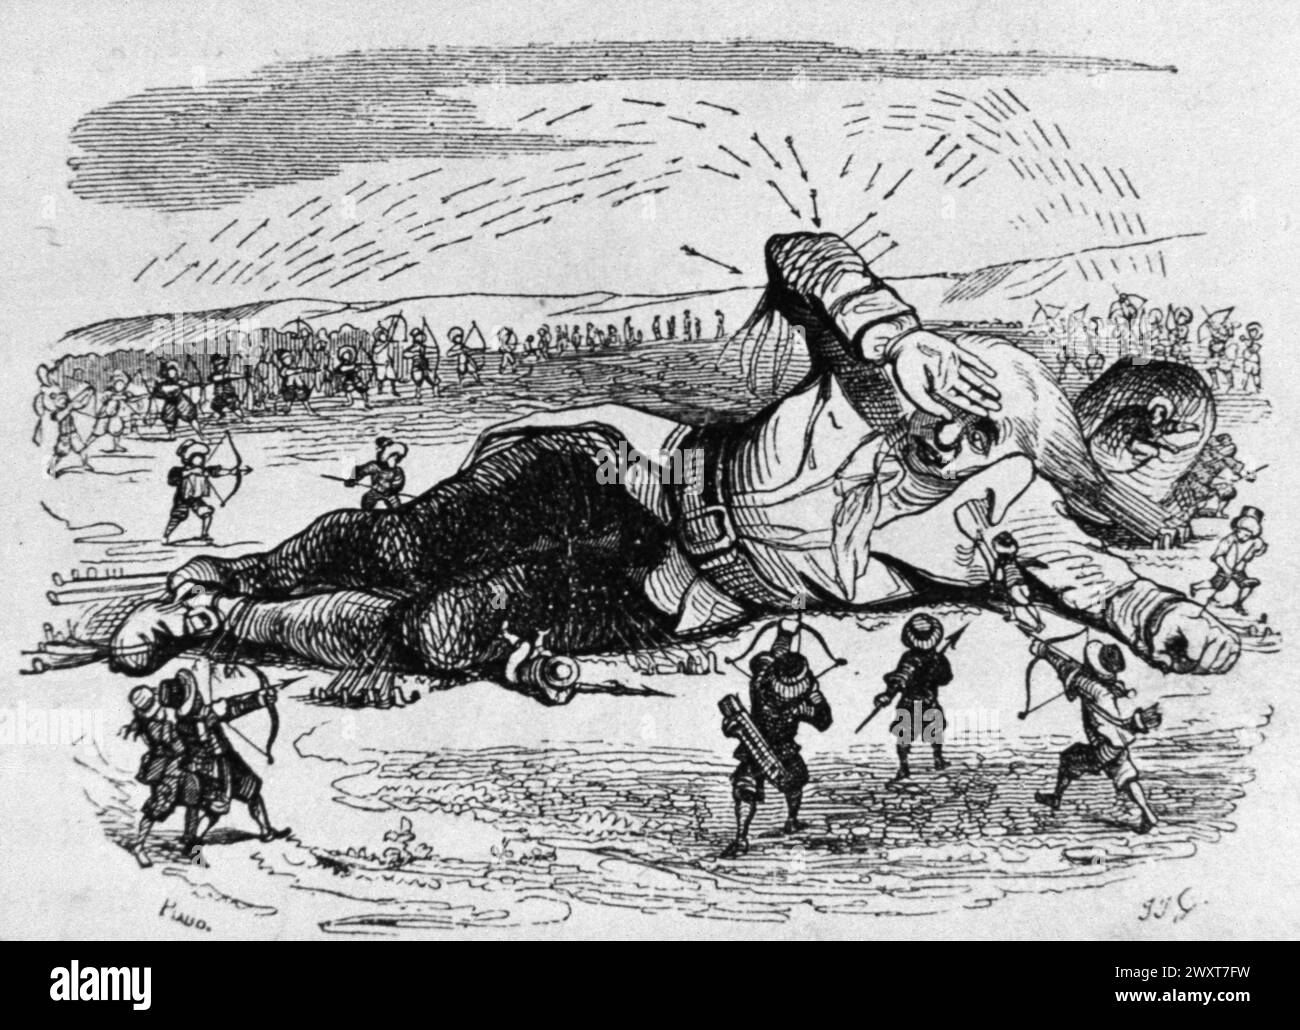 Gulliver est attaqué par les Lilliputiens, illustration du livre les voyages de Gulliver, de Jonathan Swift, Angleterre du XIXe siècle Banque D'Images